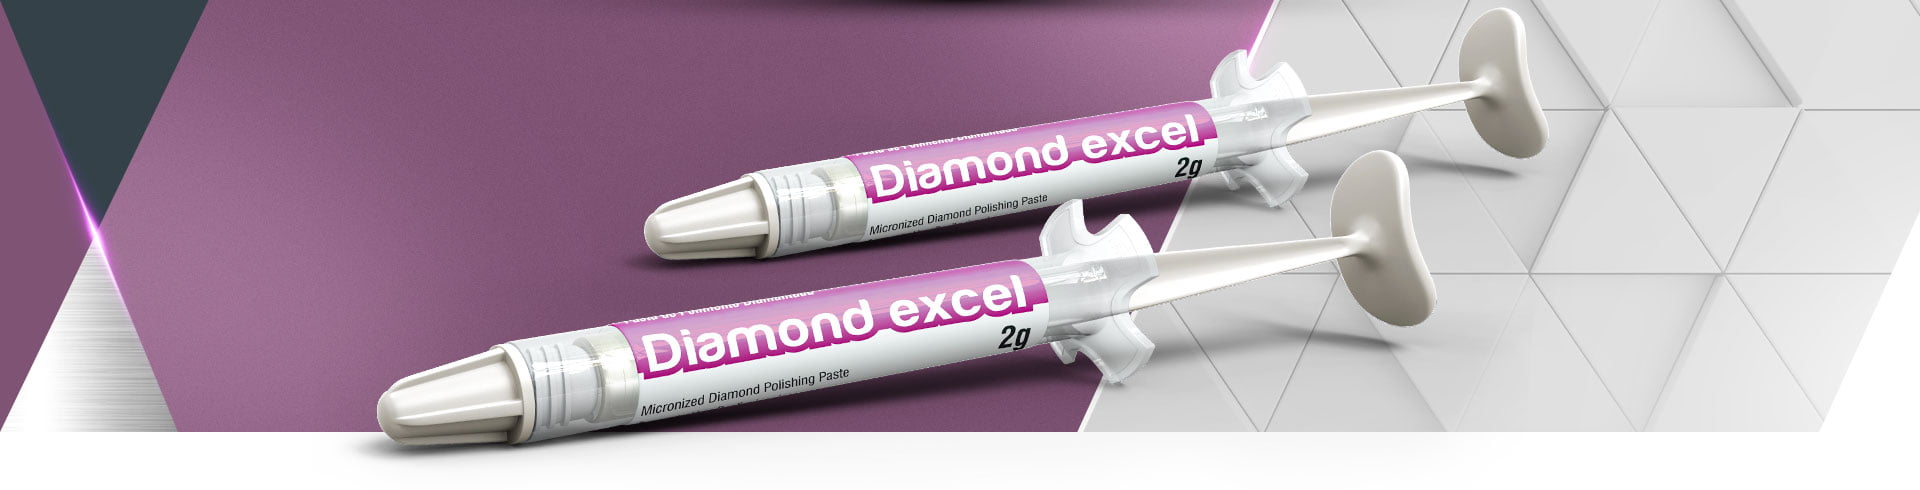 banner-desk-Diamond-excel[1]